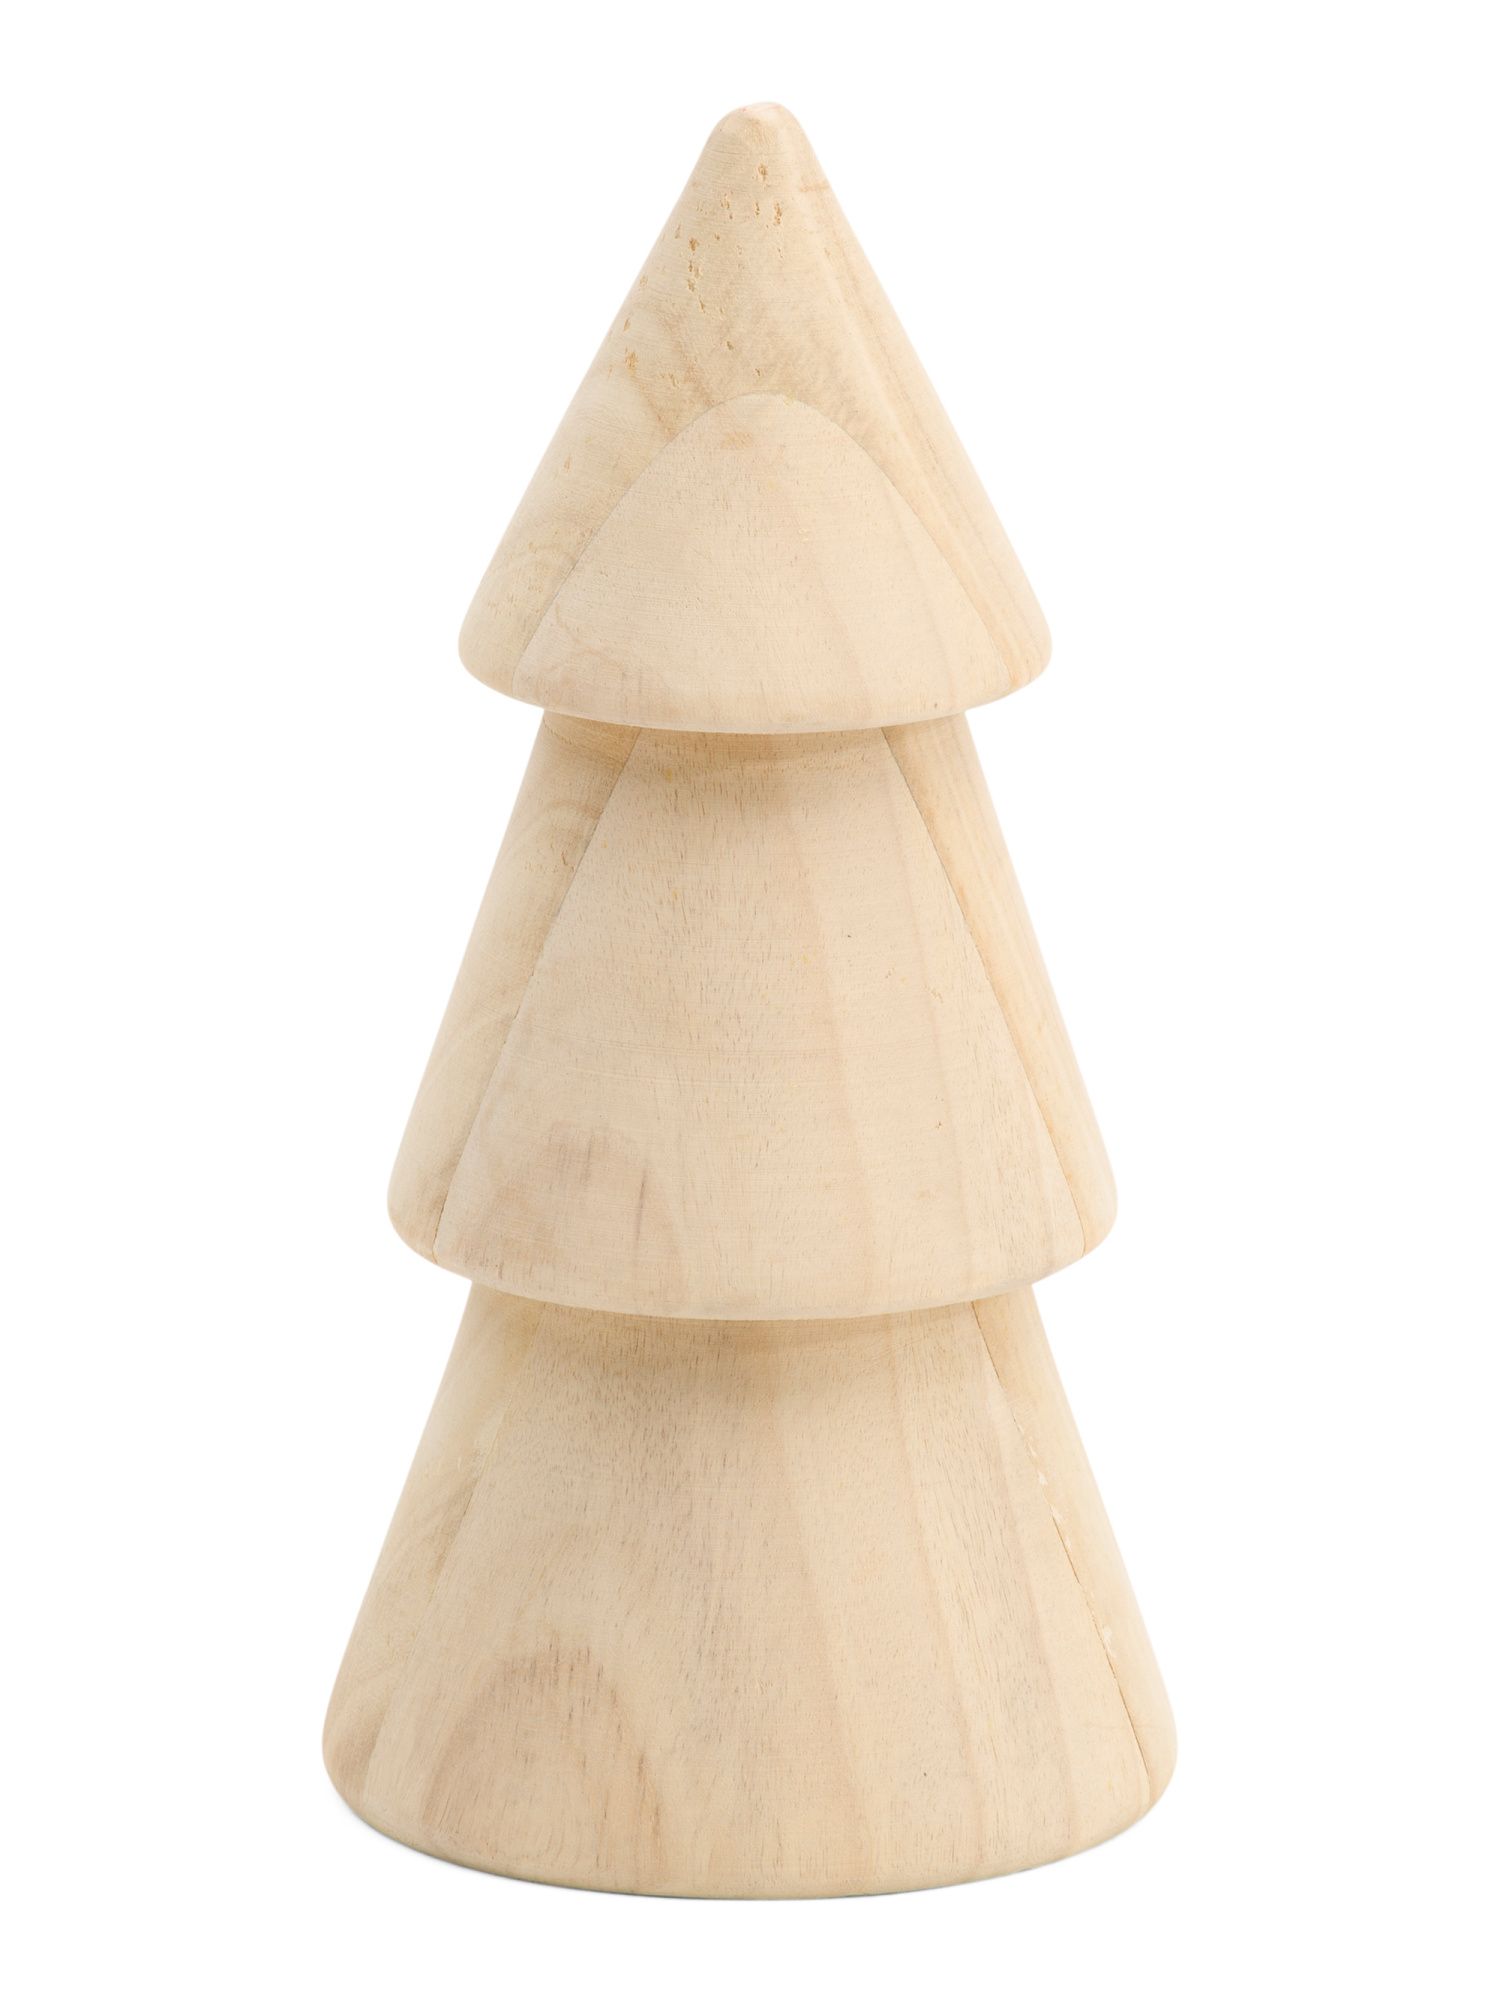 8.75in Tall Wooden Tree Decor | TJ Maxx